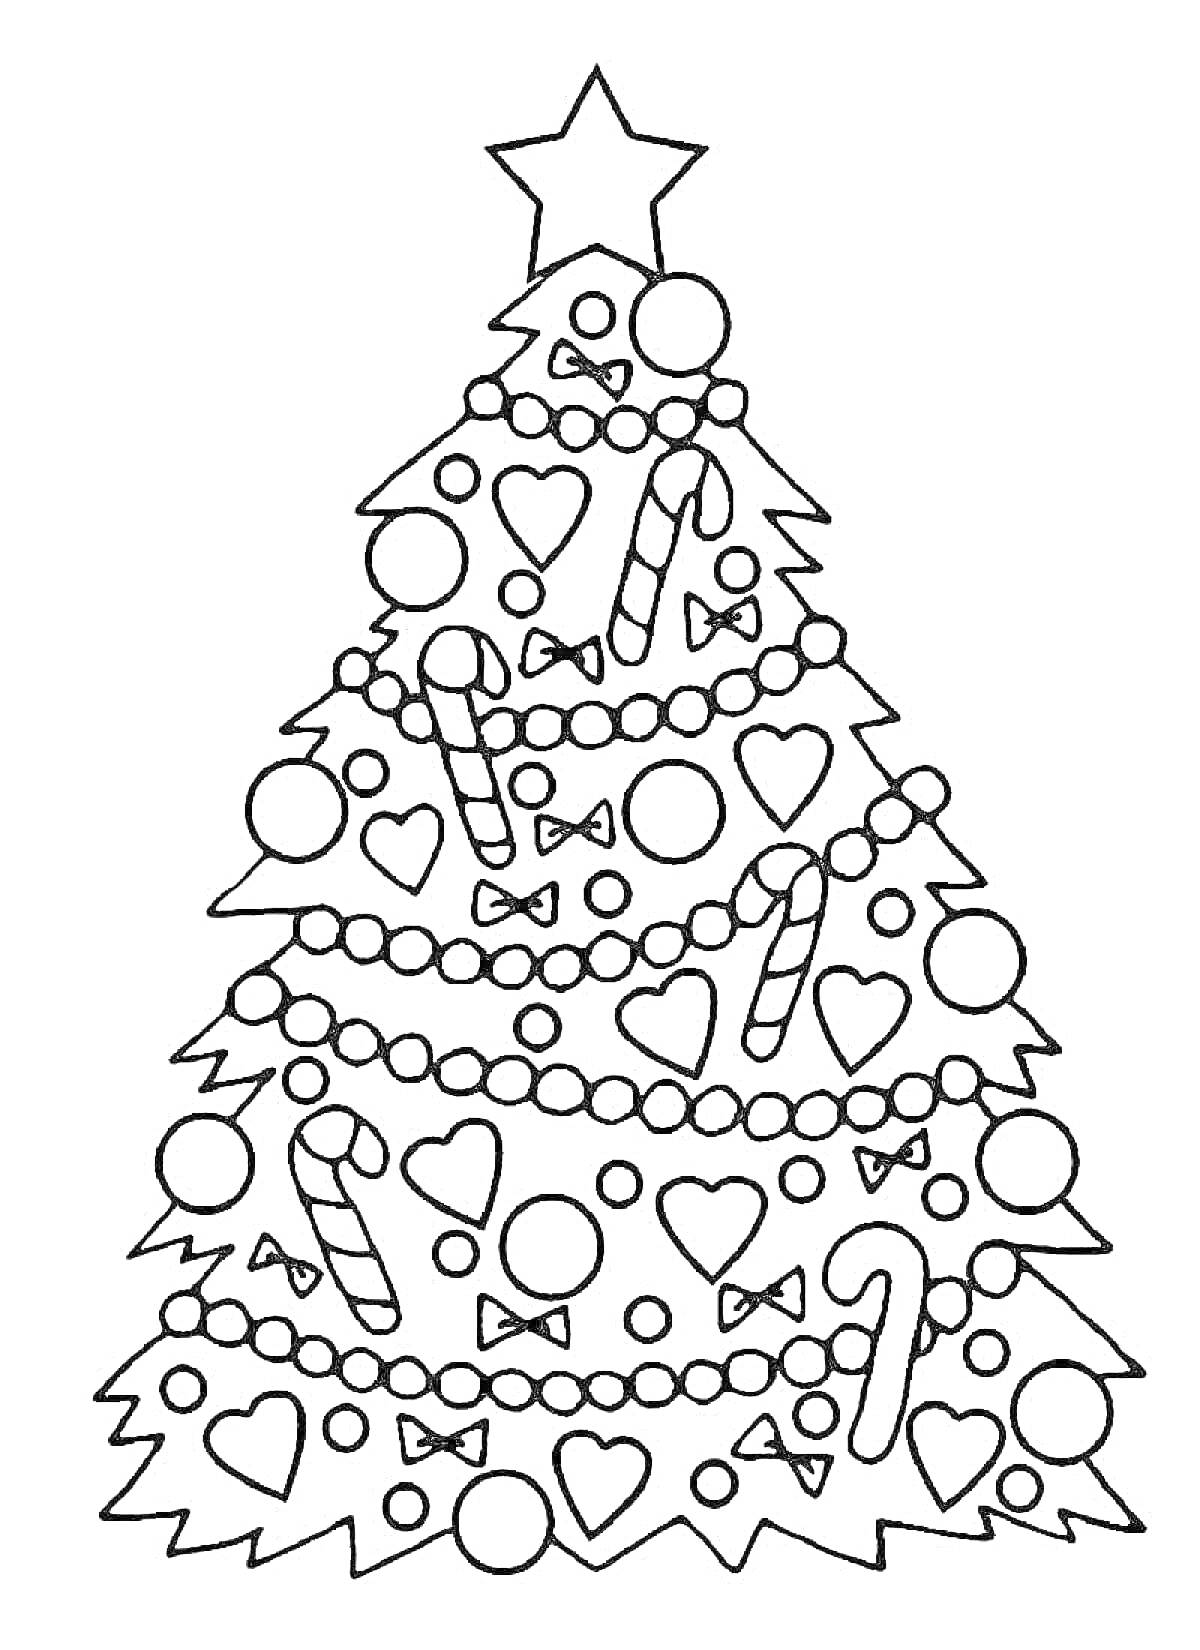 Раскраска новогодняя елка с украшениями: звезда, шары, конфеты, гирлянда, бантики, сердечки